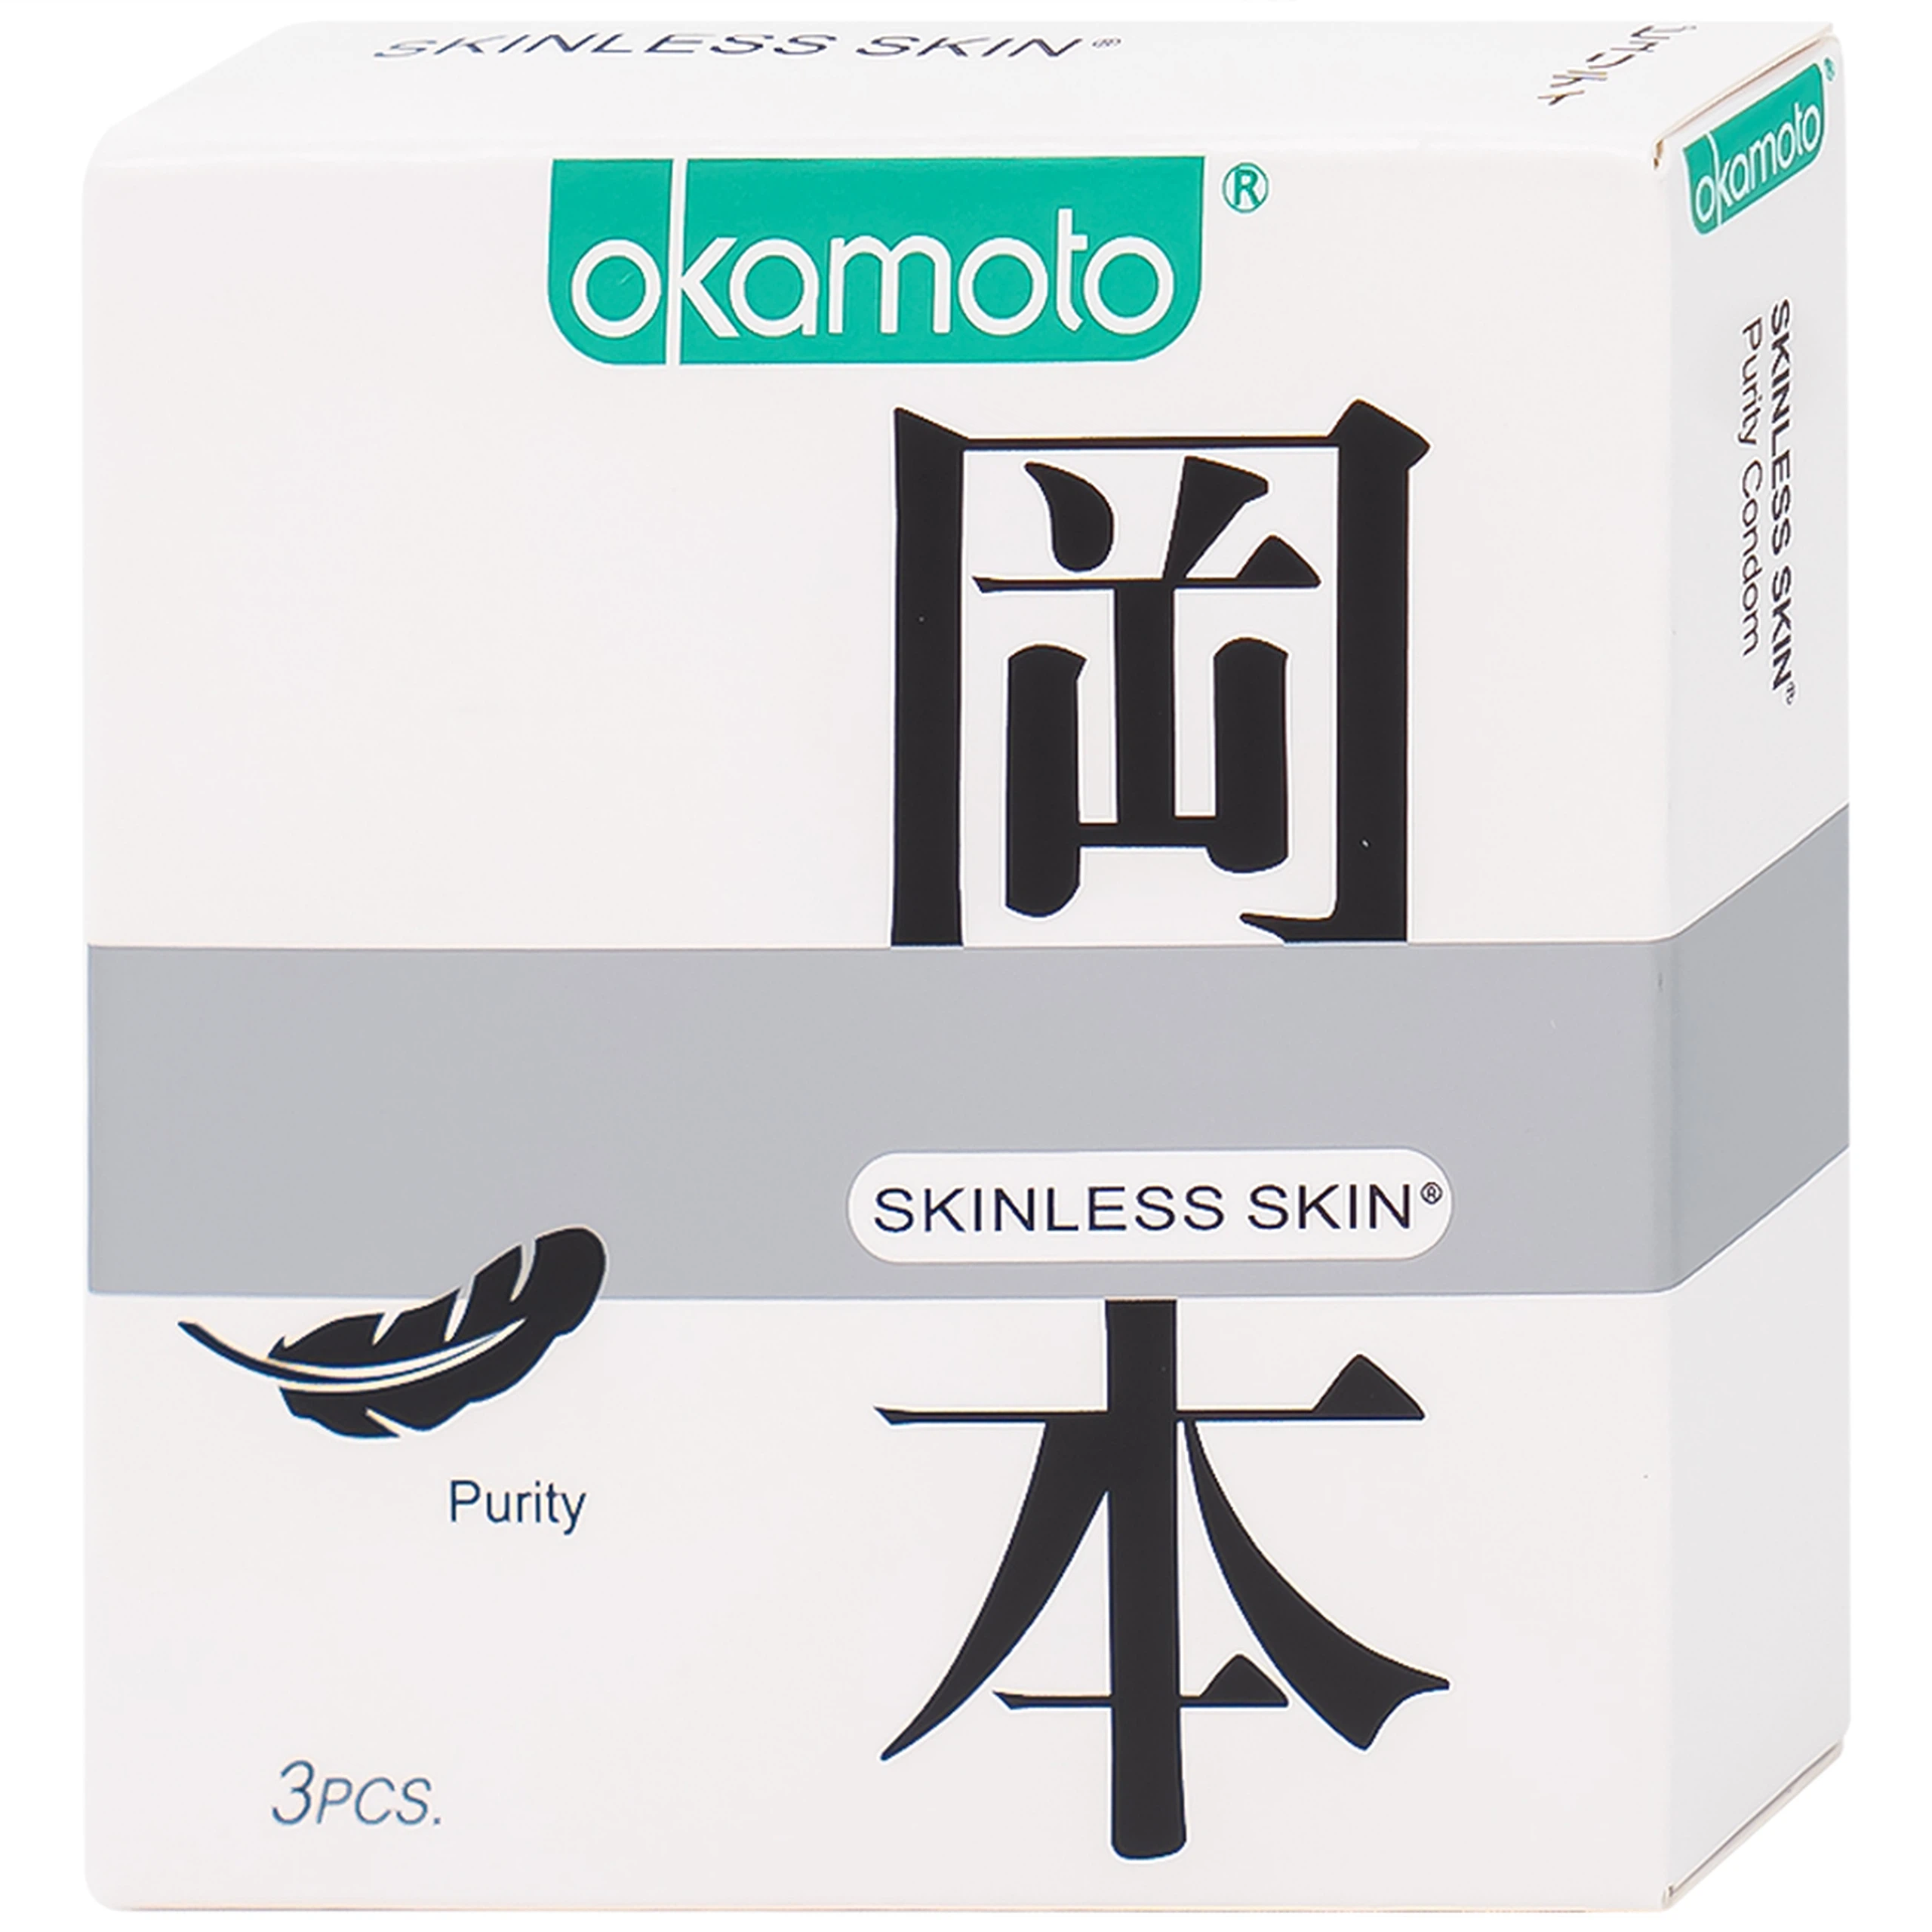 Bao cao su Okamoto Skinless Skin Purity không mùi, tinh khiết, dùng để phòng tránh thai và ngăn ngừa HIV (3 cái)